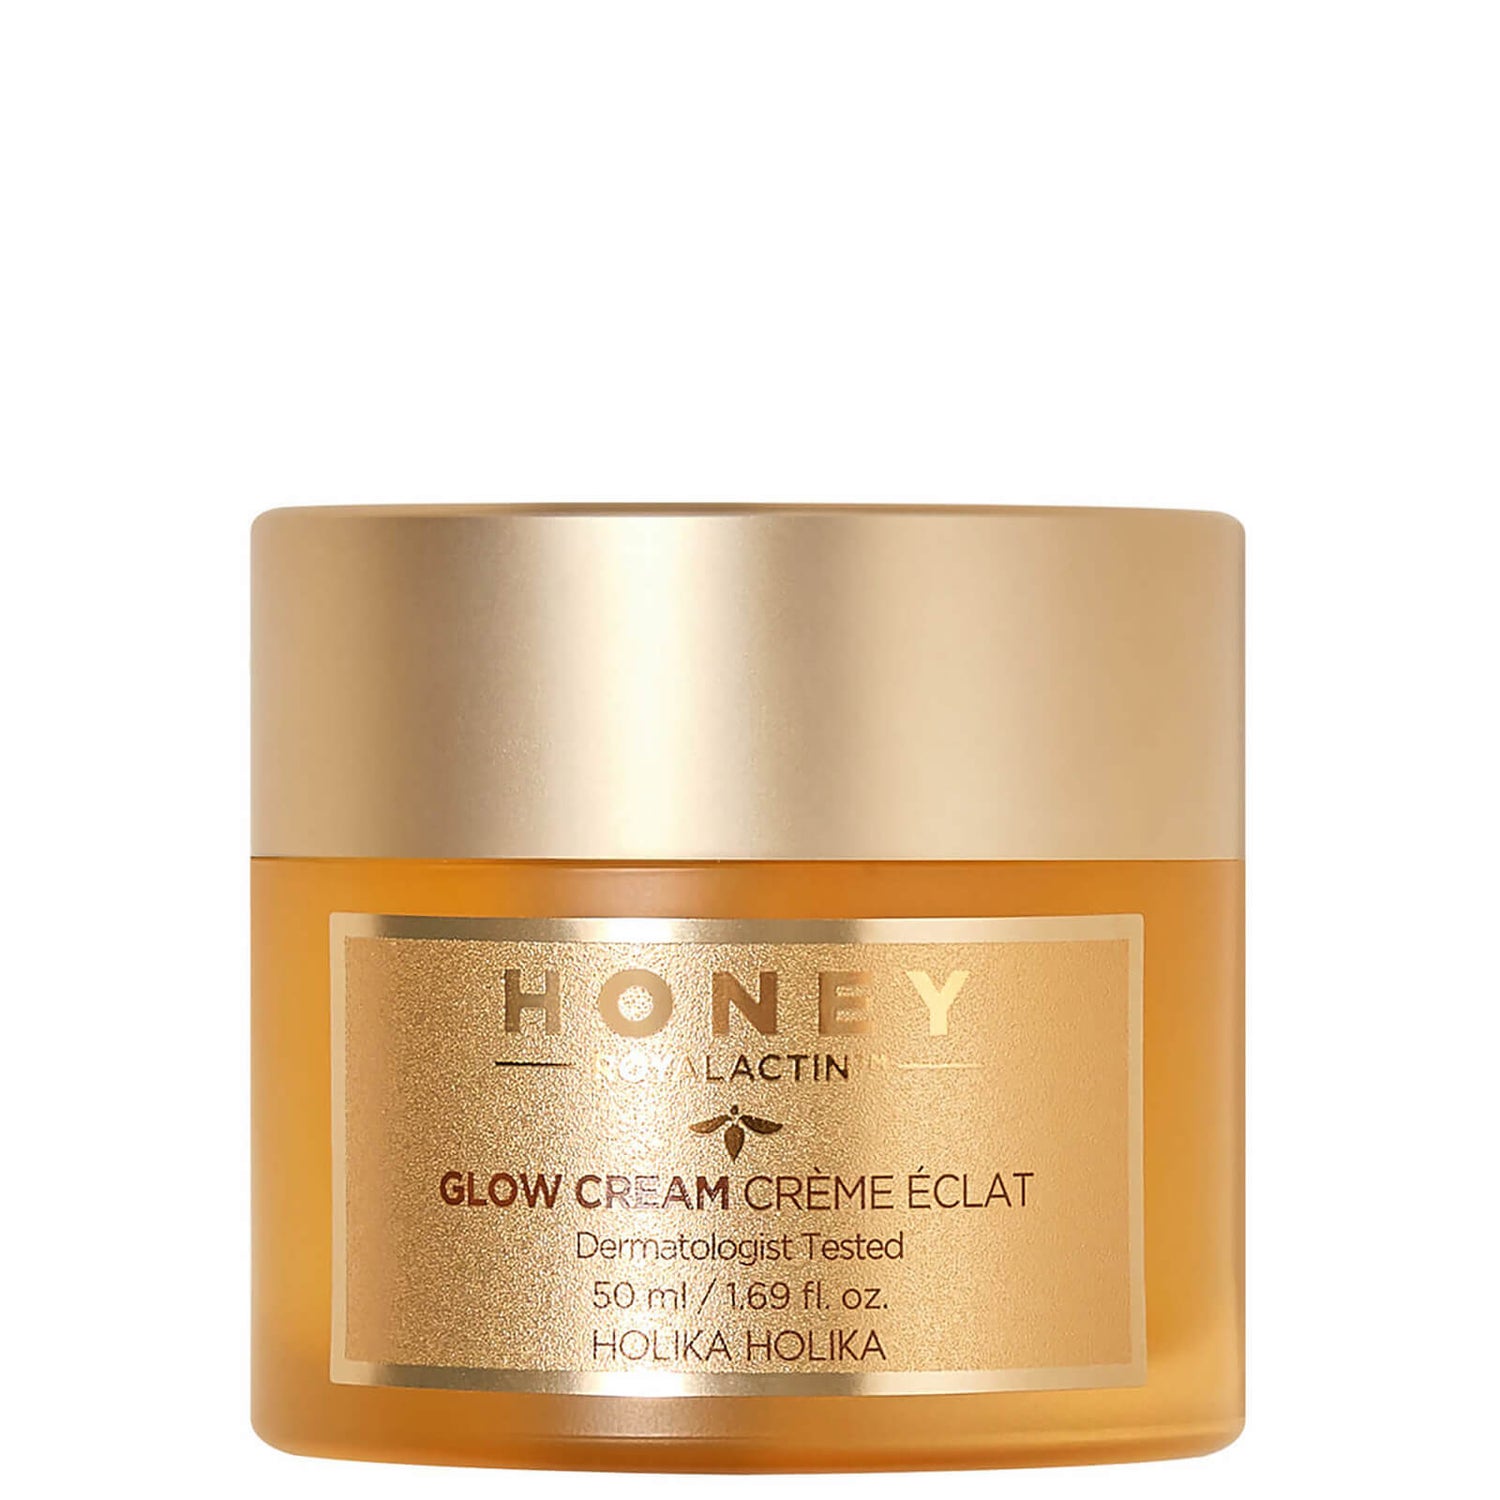 Питательный крем для лица с медом Holika Holika Honey Royalactin Glow Cream, 50 мл